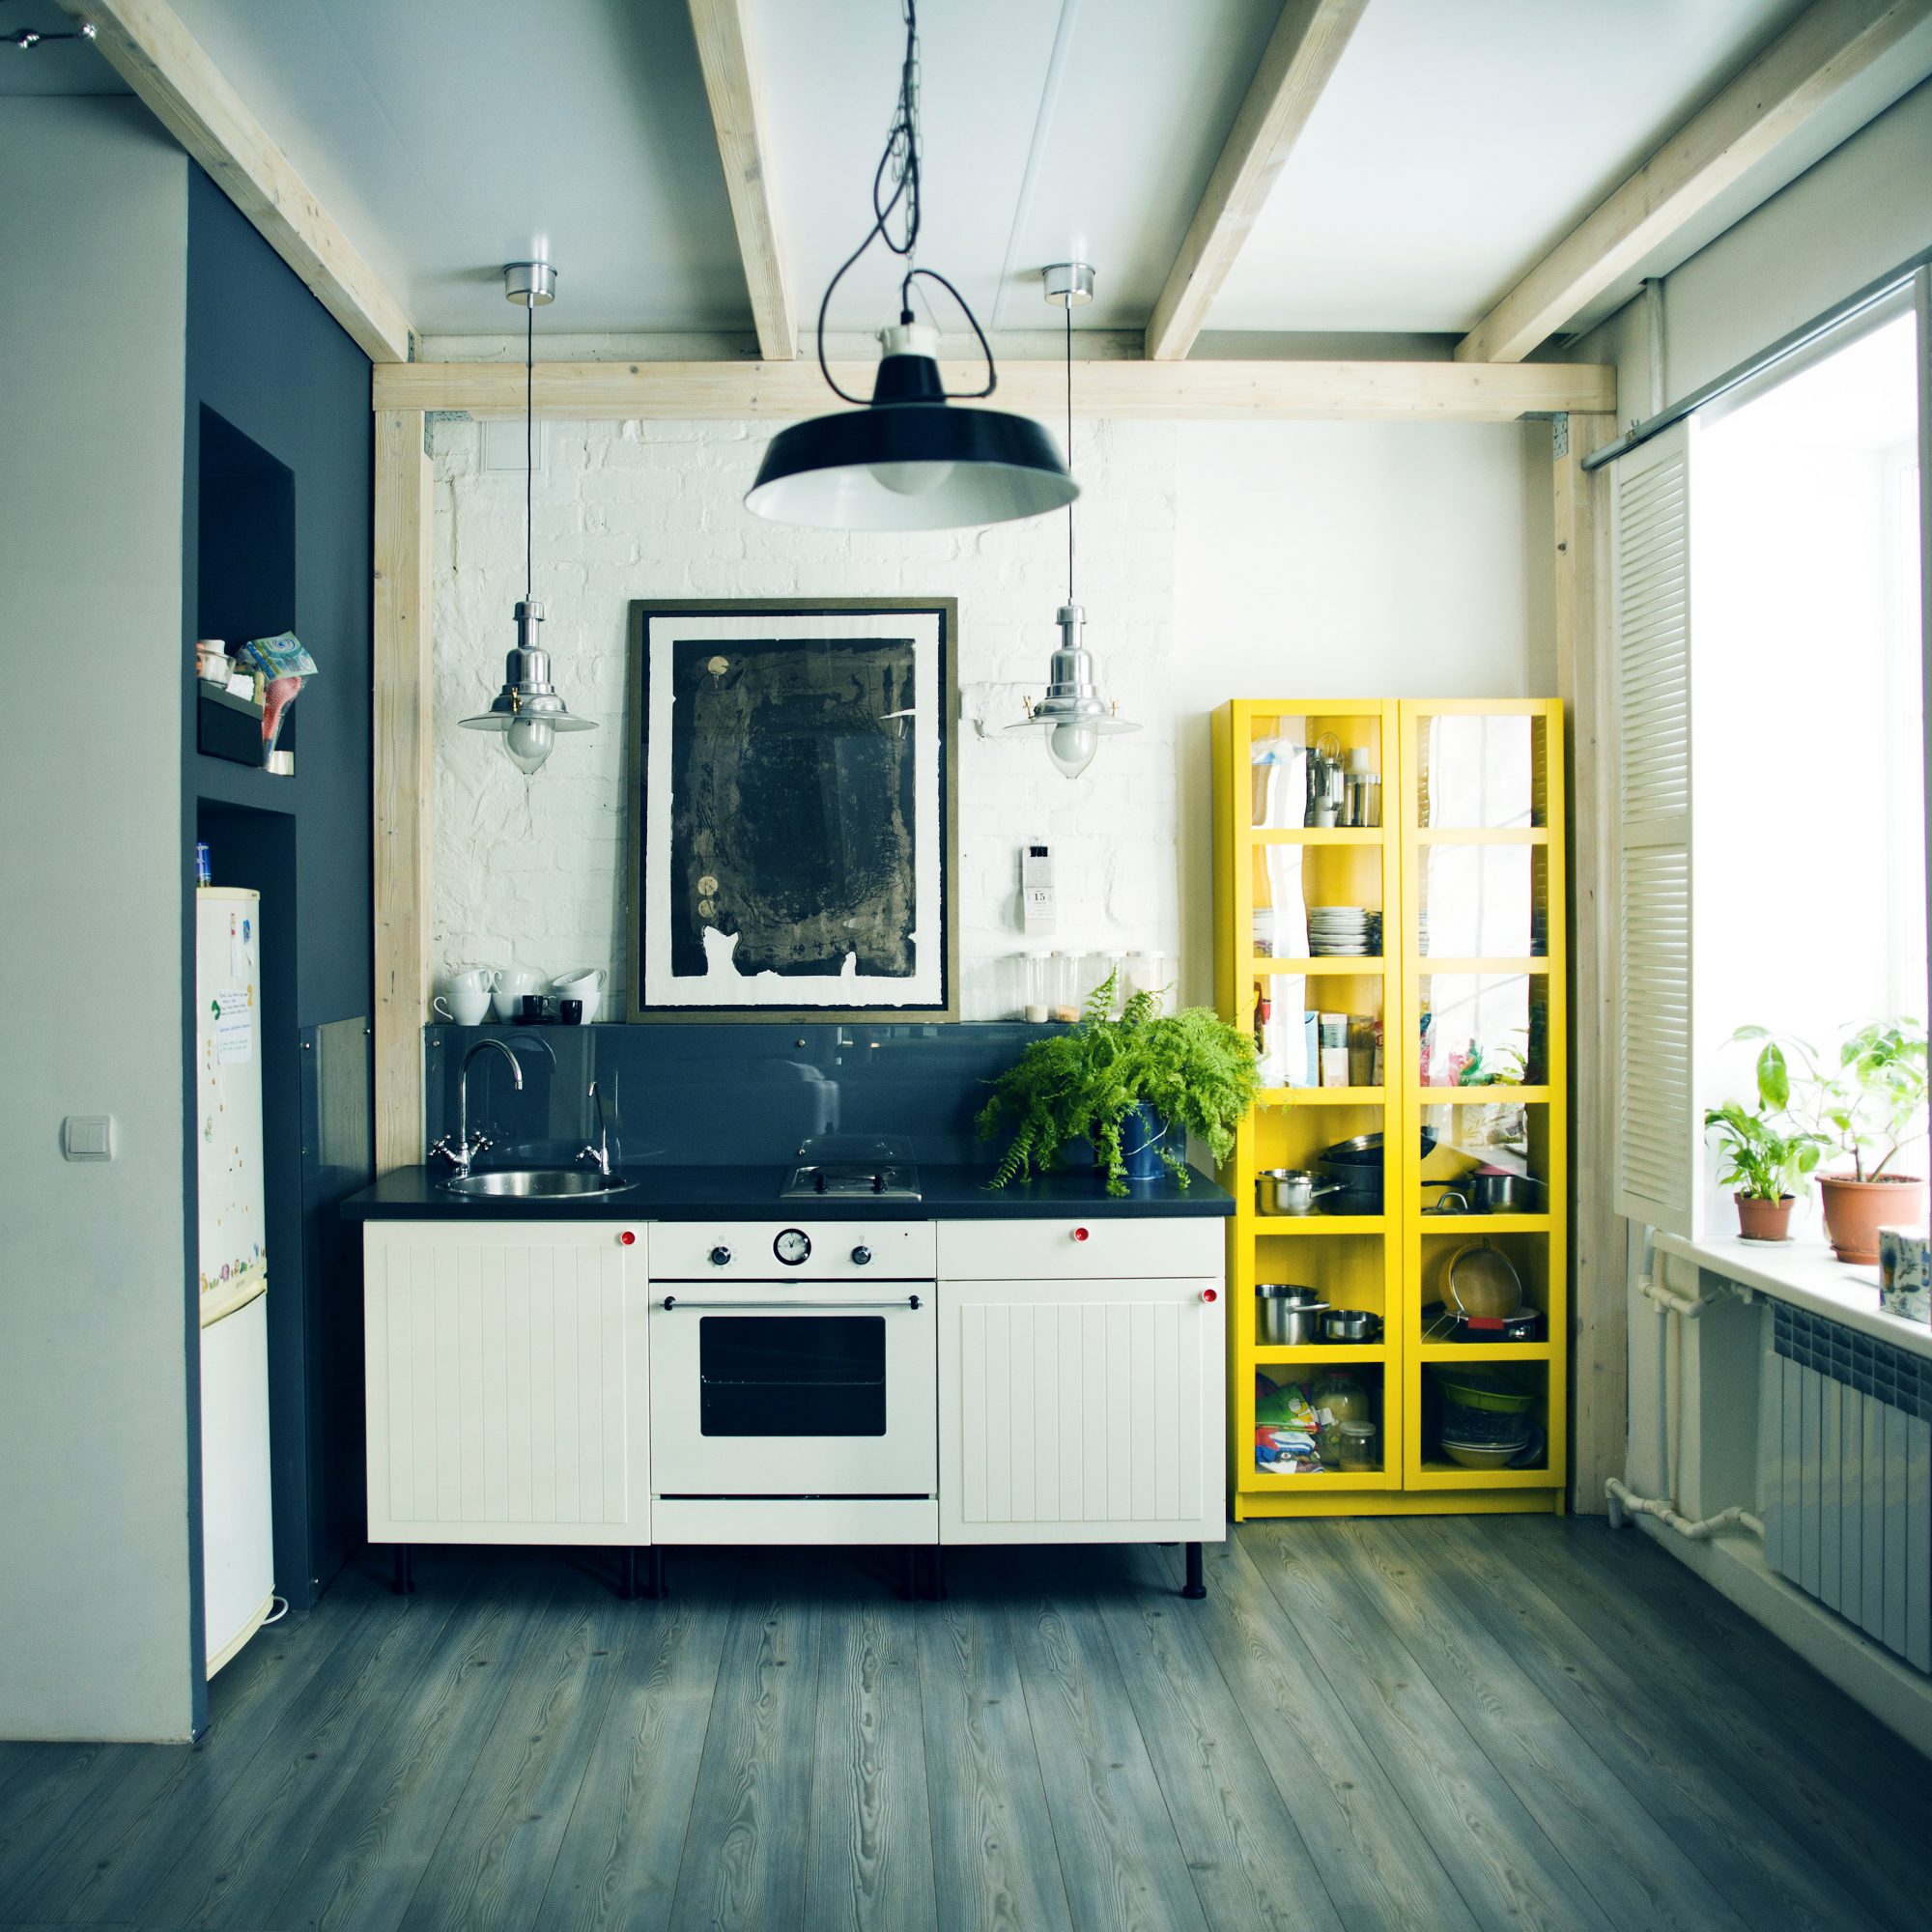 getty-apartmant-kitchen-image